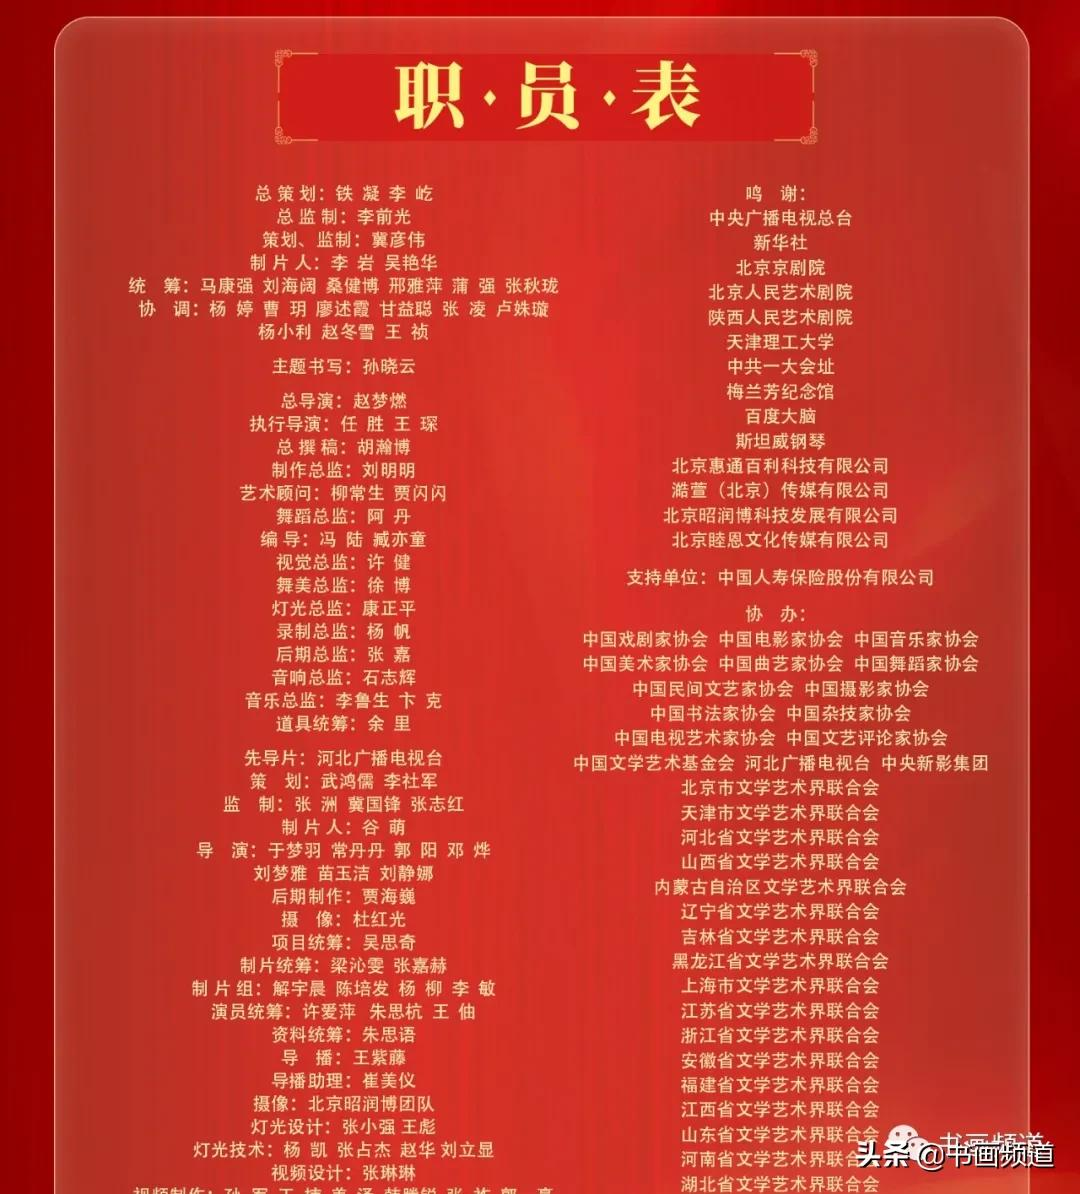 时代风尚——中国文艺志愿者崇德尚艺特别节目”